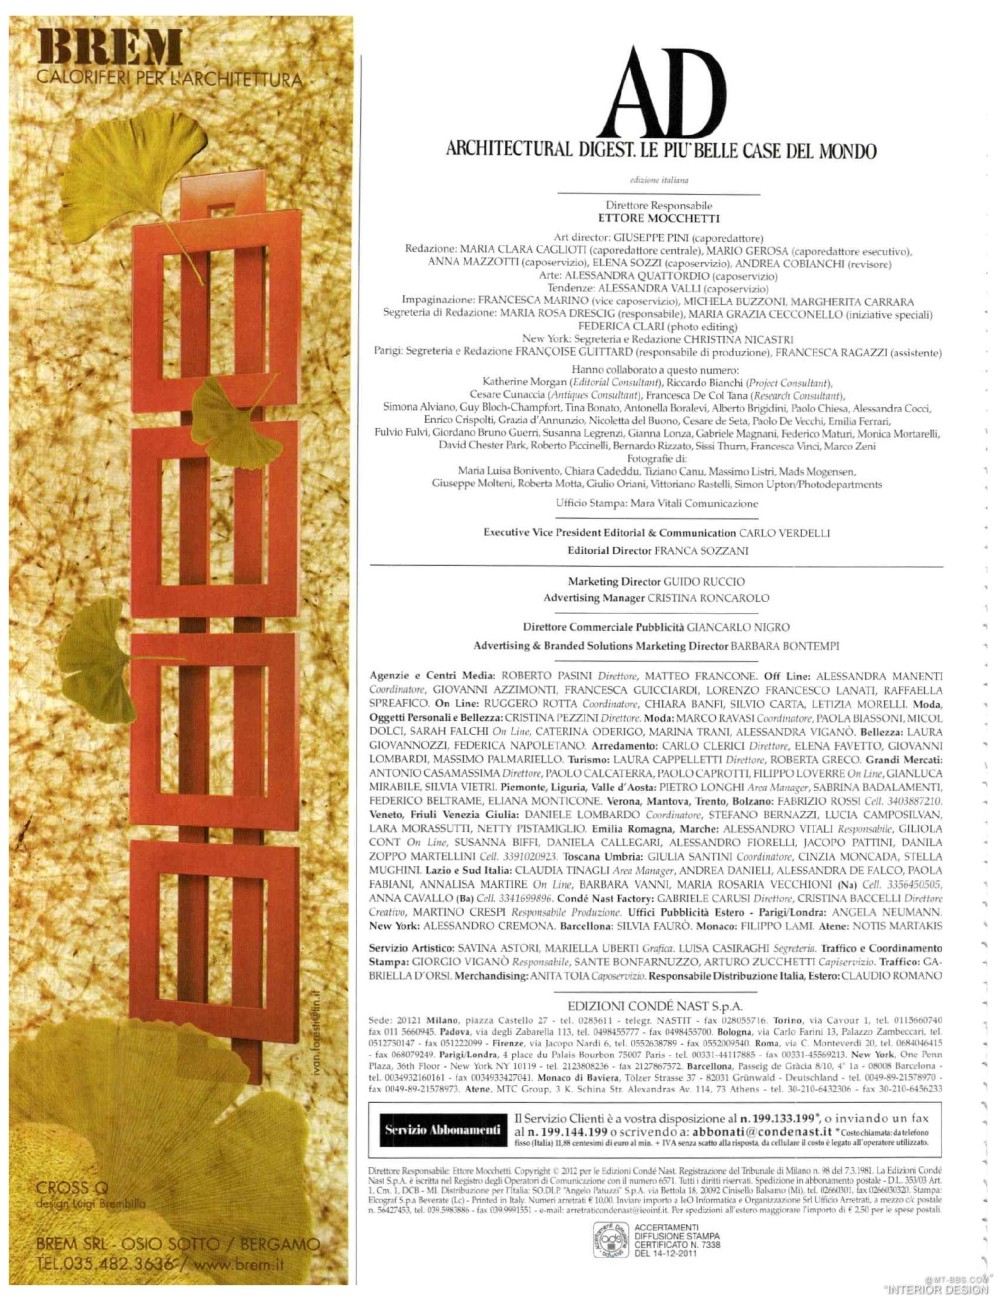 意大利AD 杂志 2012年全年JPG高清版本 全免（上传完毕）_0024.jpg